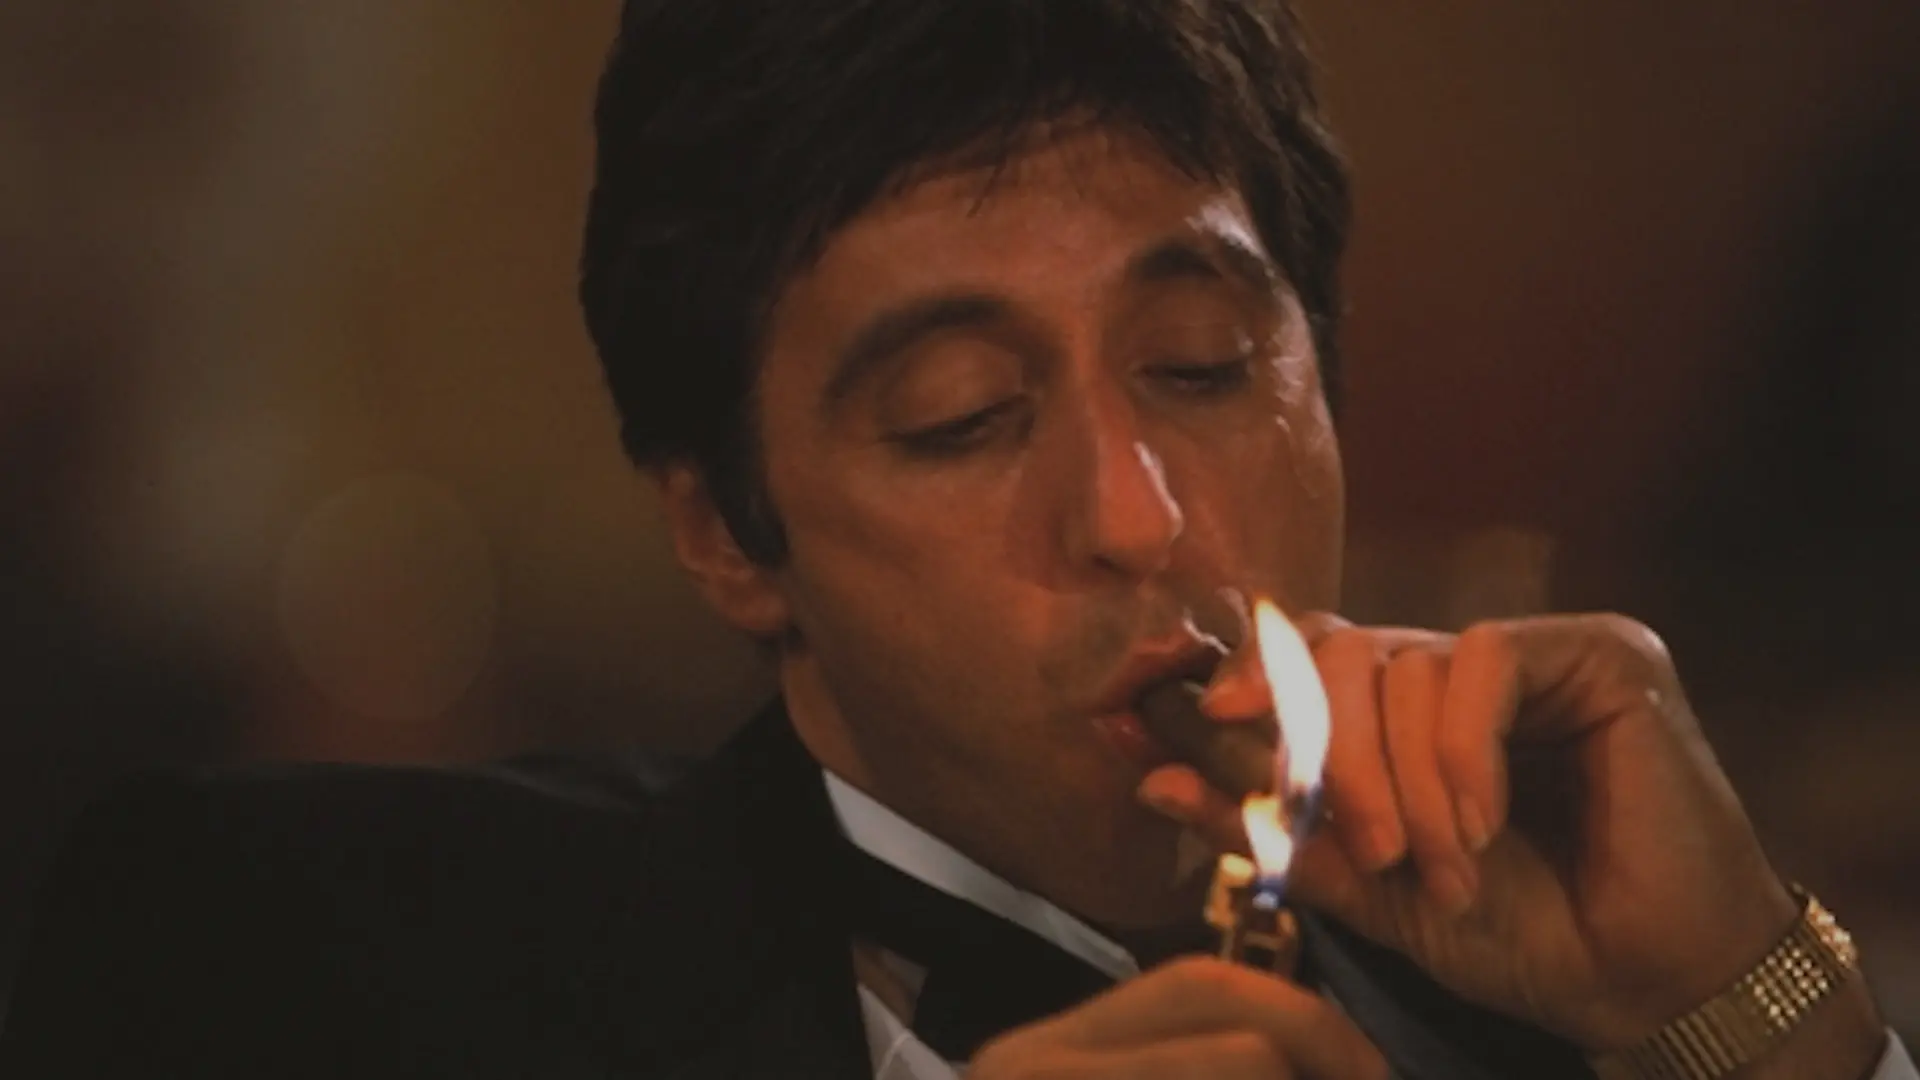 پاچینو در حال روشن کردن سیگار در فیلم صورت زخمی